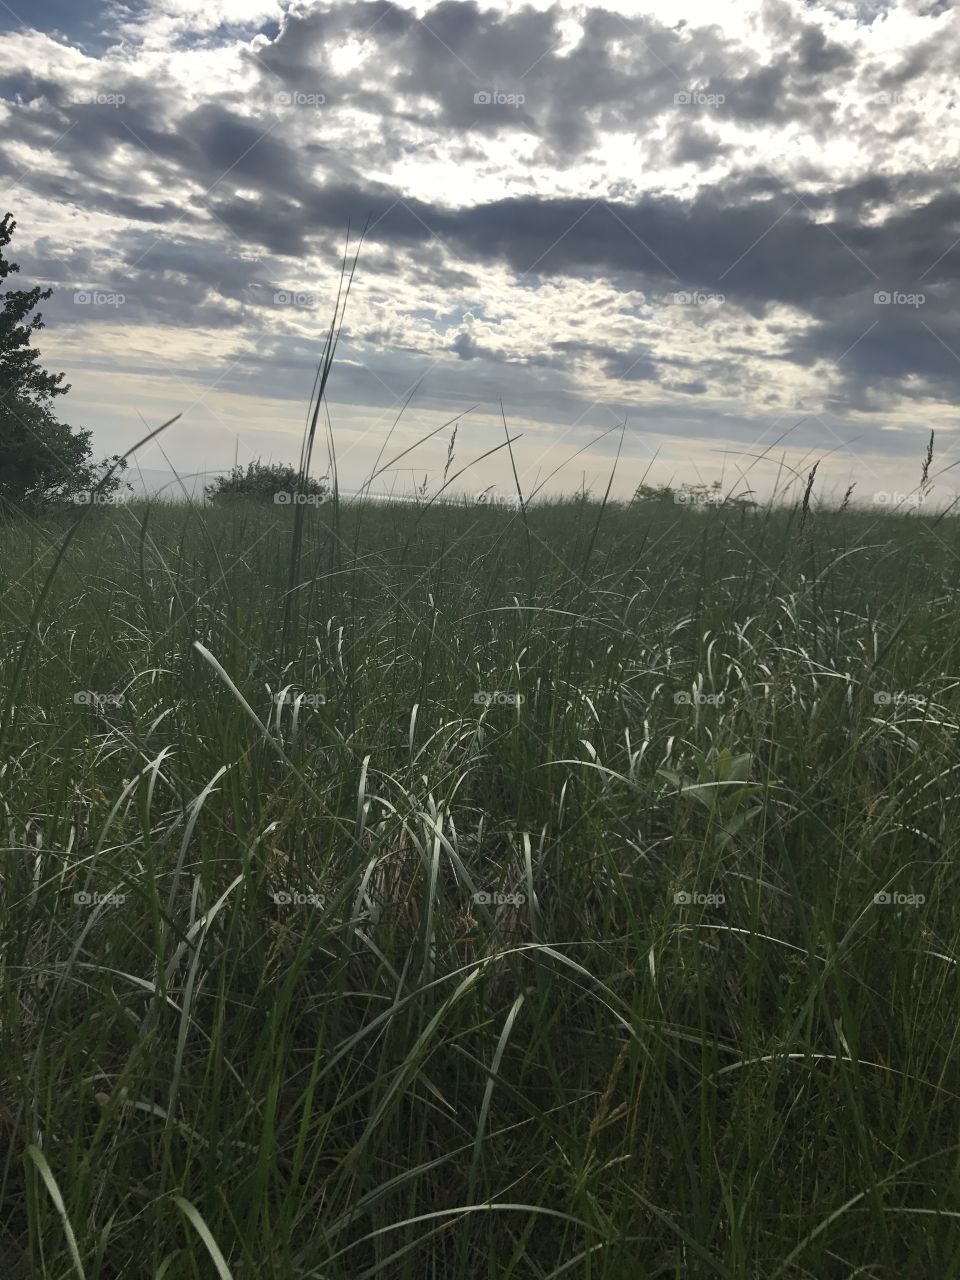 Landscape, Field, Grass, Sky, No Person